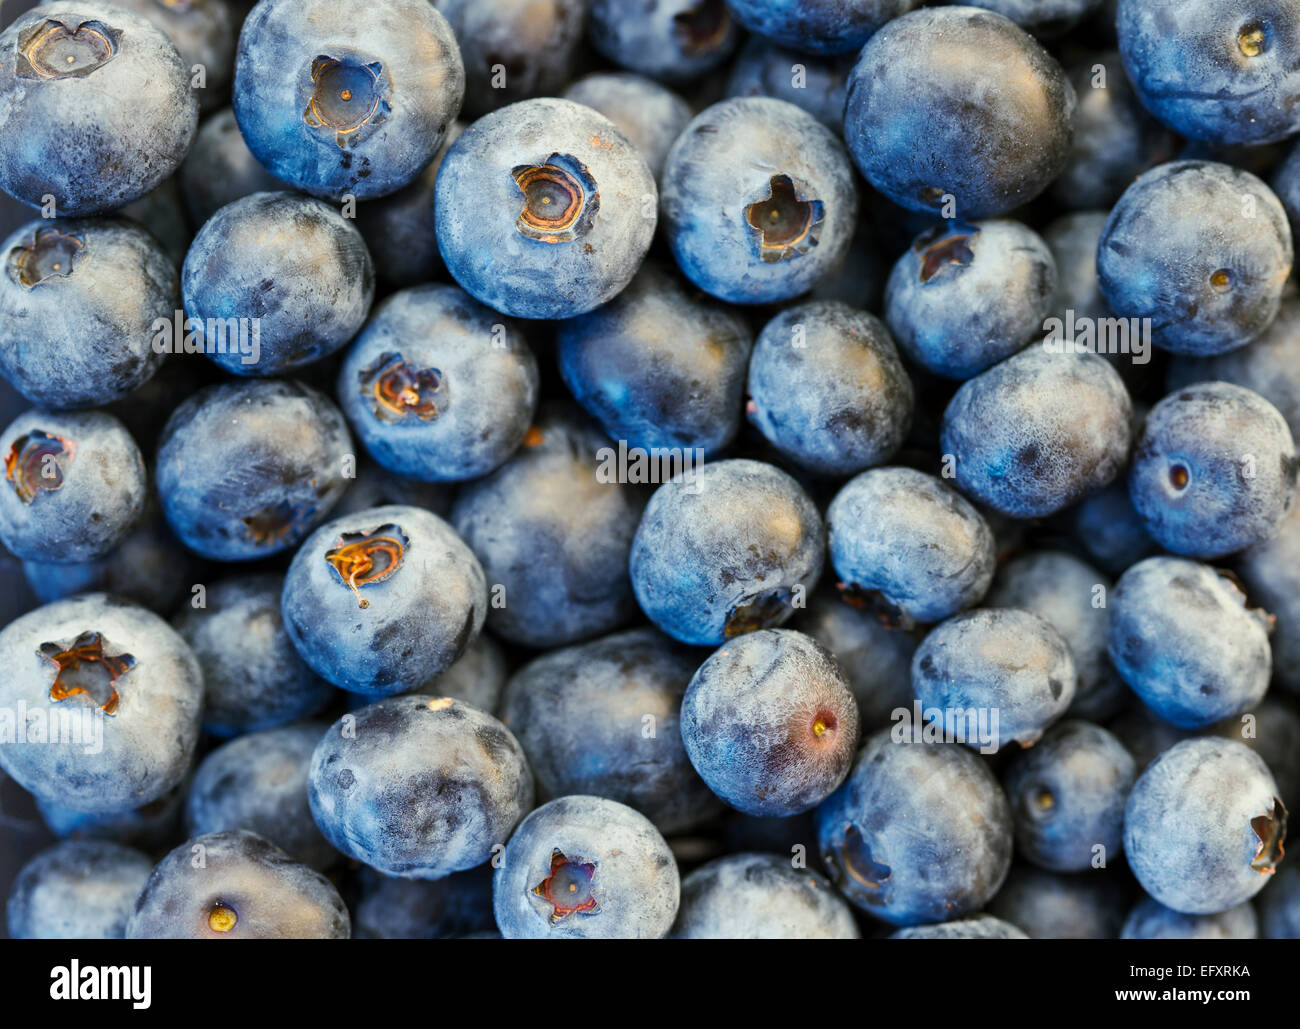 Frischen Bio-blauen Beeren in hohen Reselution. Kann als Hintergrund verwendet werden. Blaubeeren sind blühende Pflanzen der Gattung Vaccinium Stockfoto